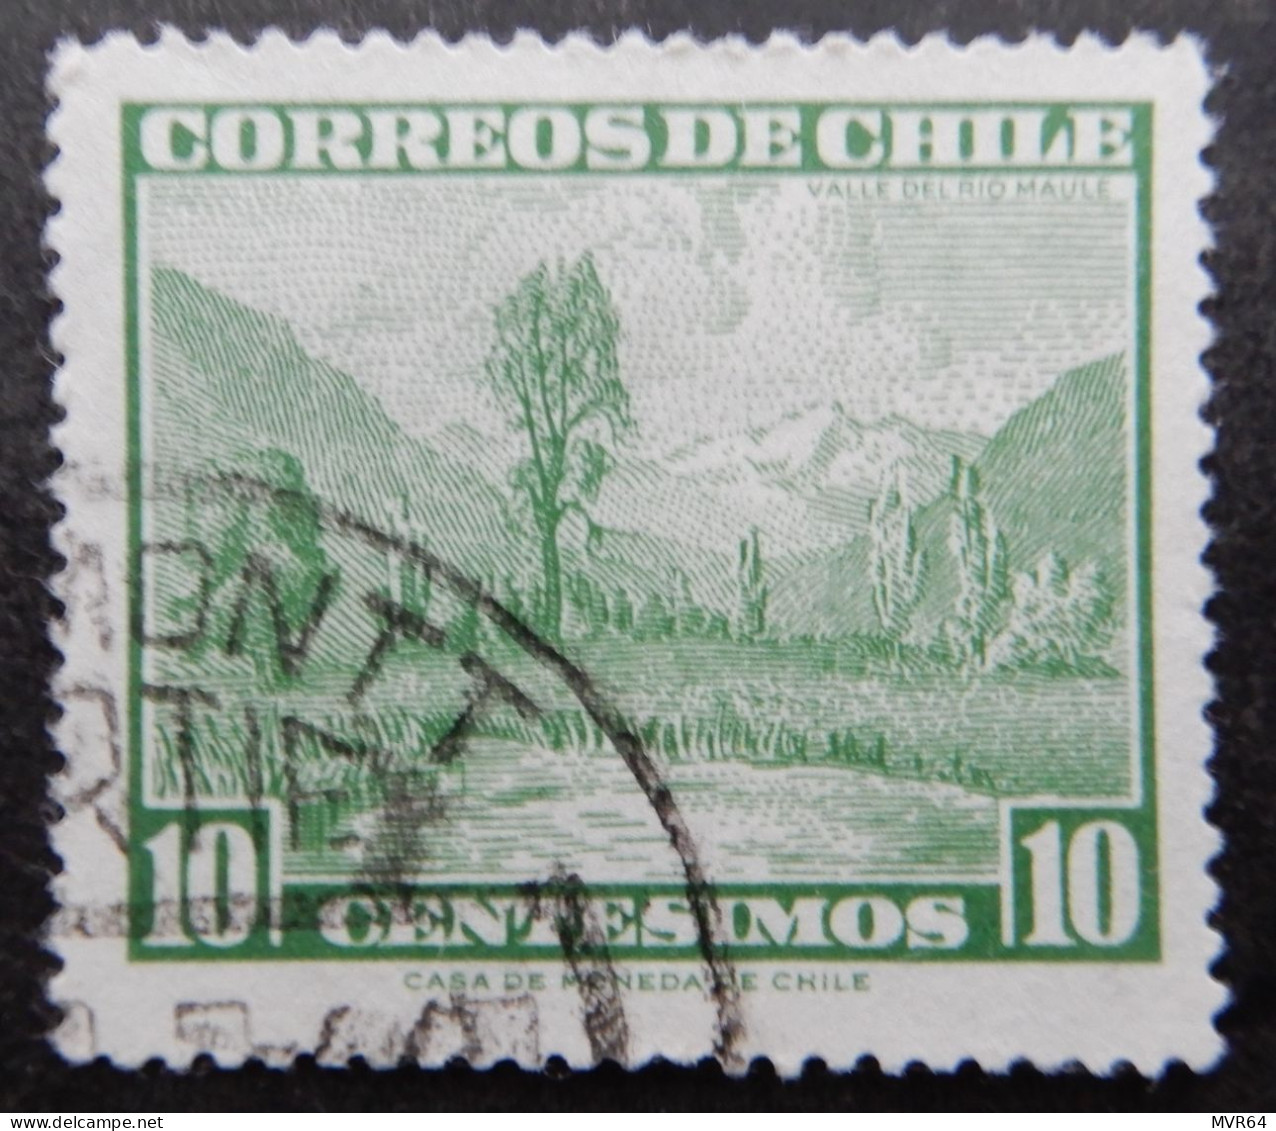 Chili Chile 1961 (1) Maule River Valley Valle Del Fiume Maule - Chili